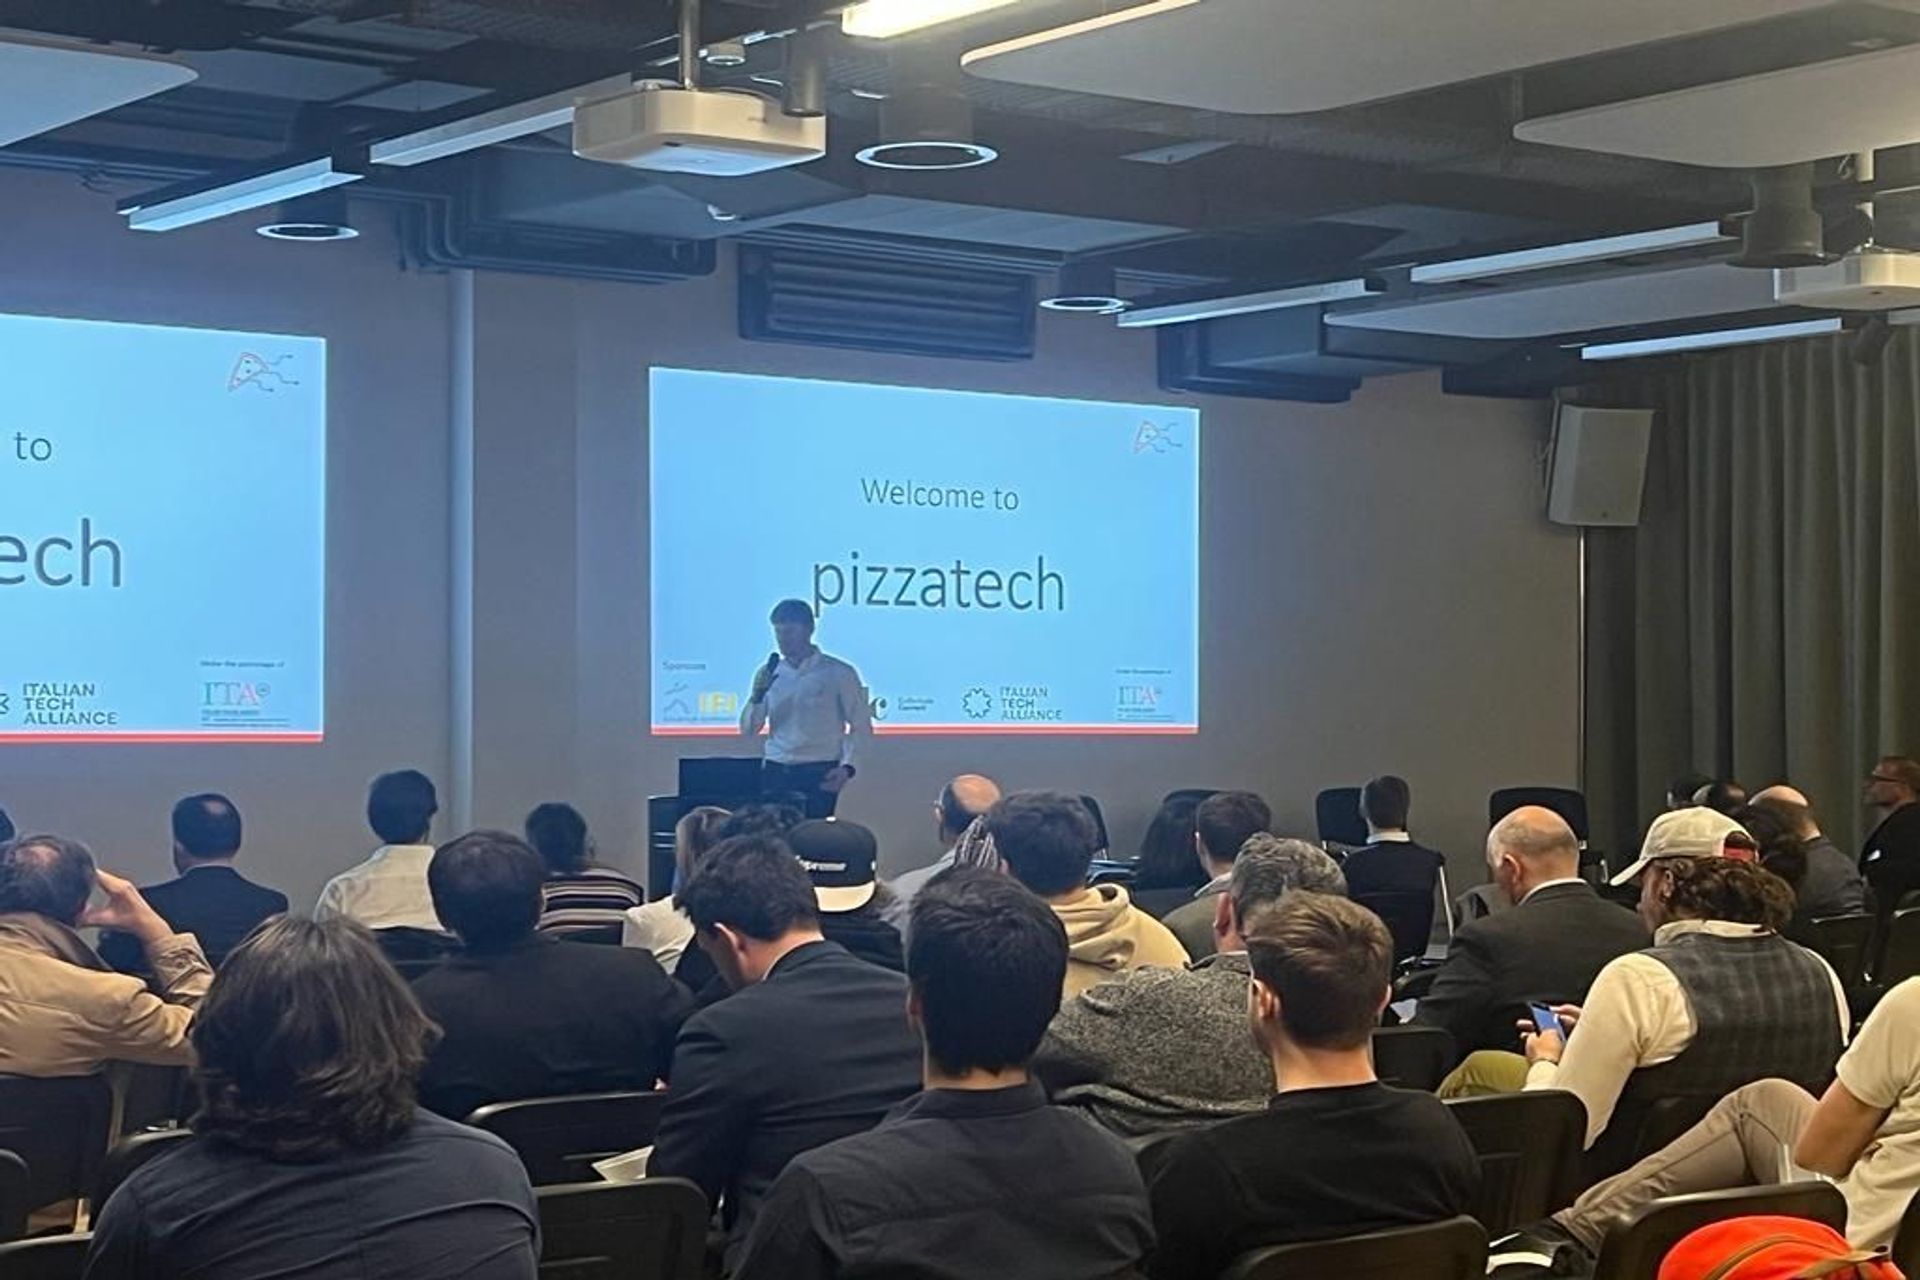 Първото издание на „Italian Tech Night“, организирано от асоциацията #pizzatech, се проведе вечерта на 24 март 2022 г. в Startup Space by IFJ в Шлирен, близо до Цюрих: встъпителната реч на организатора Джанмария Сбета